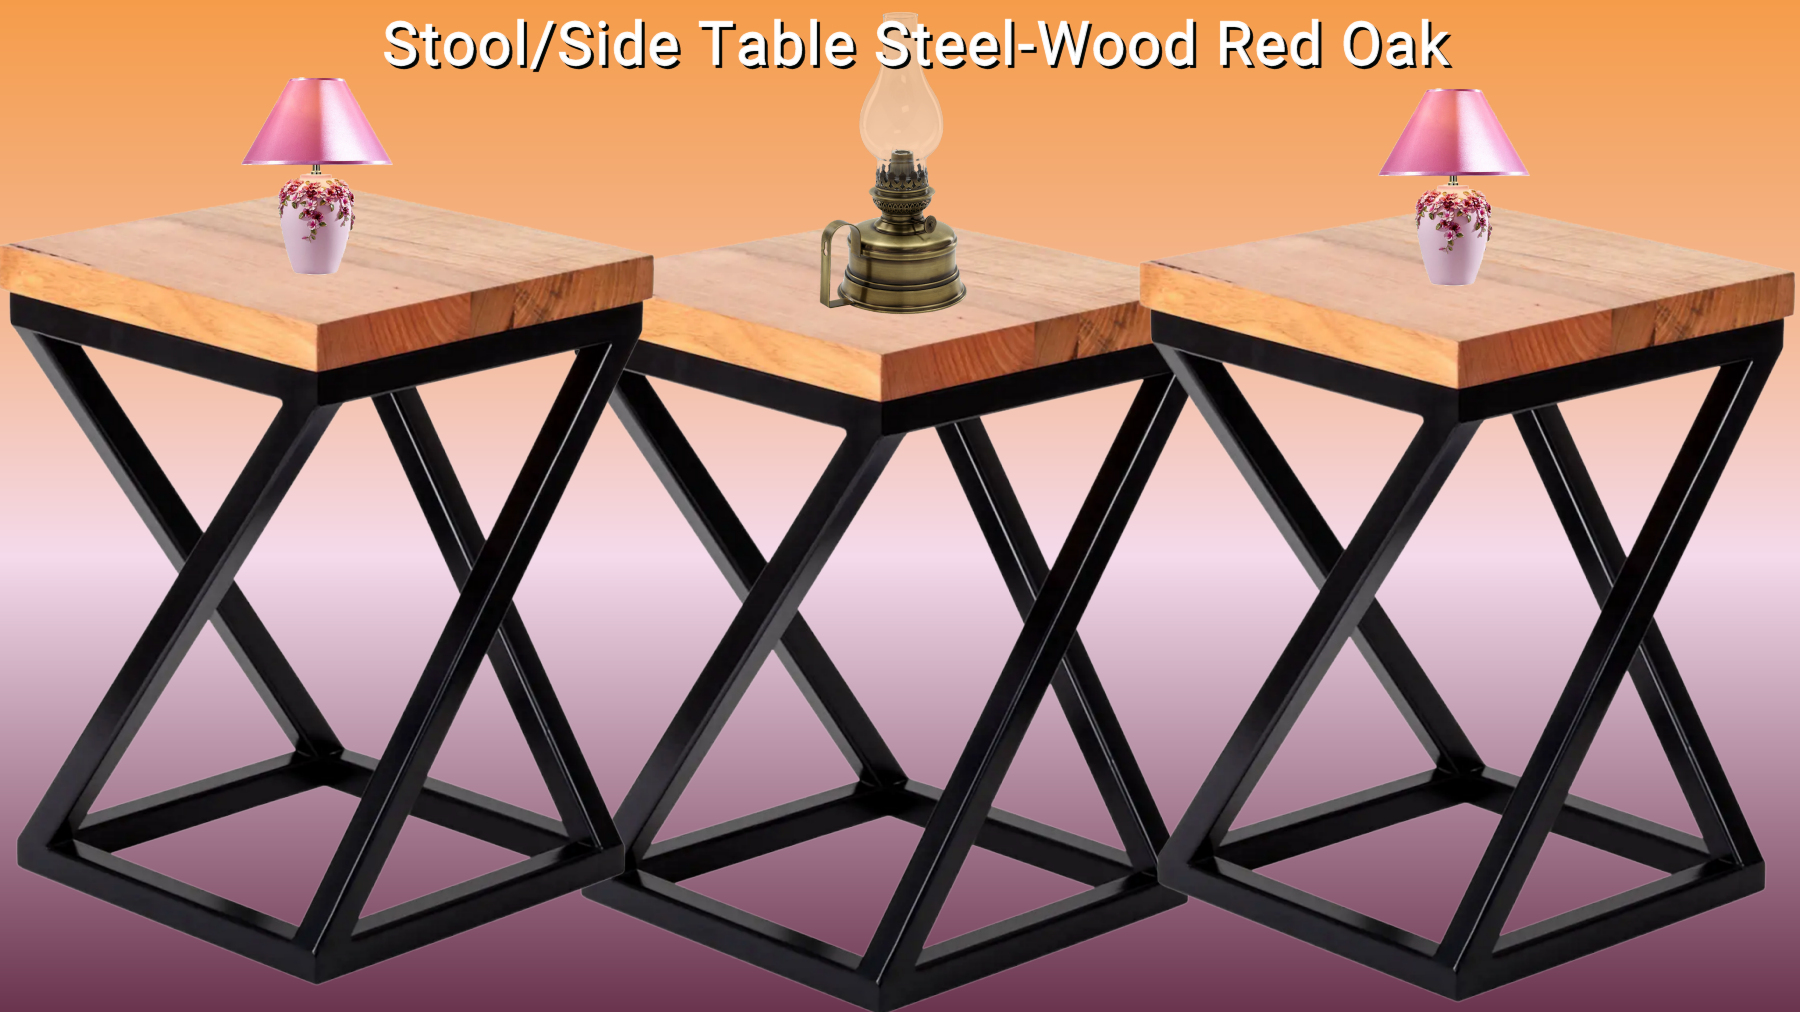 Stool-Side Table Steel-Wood Red Oak